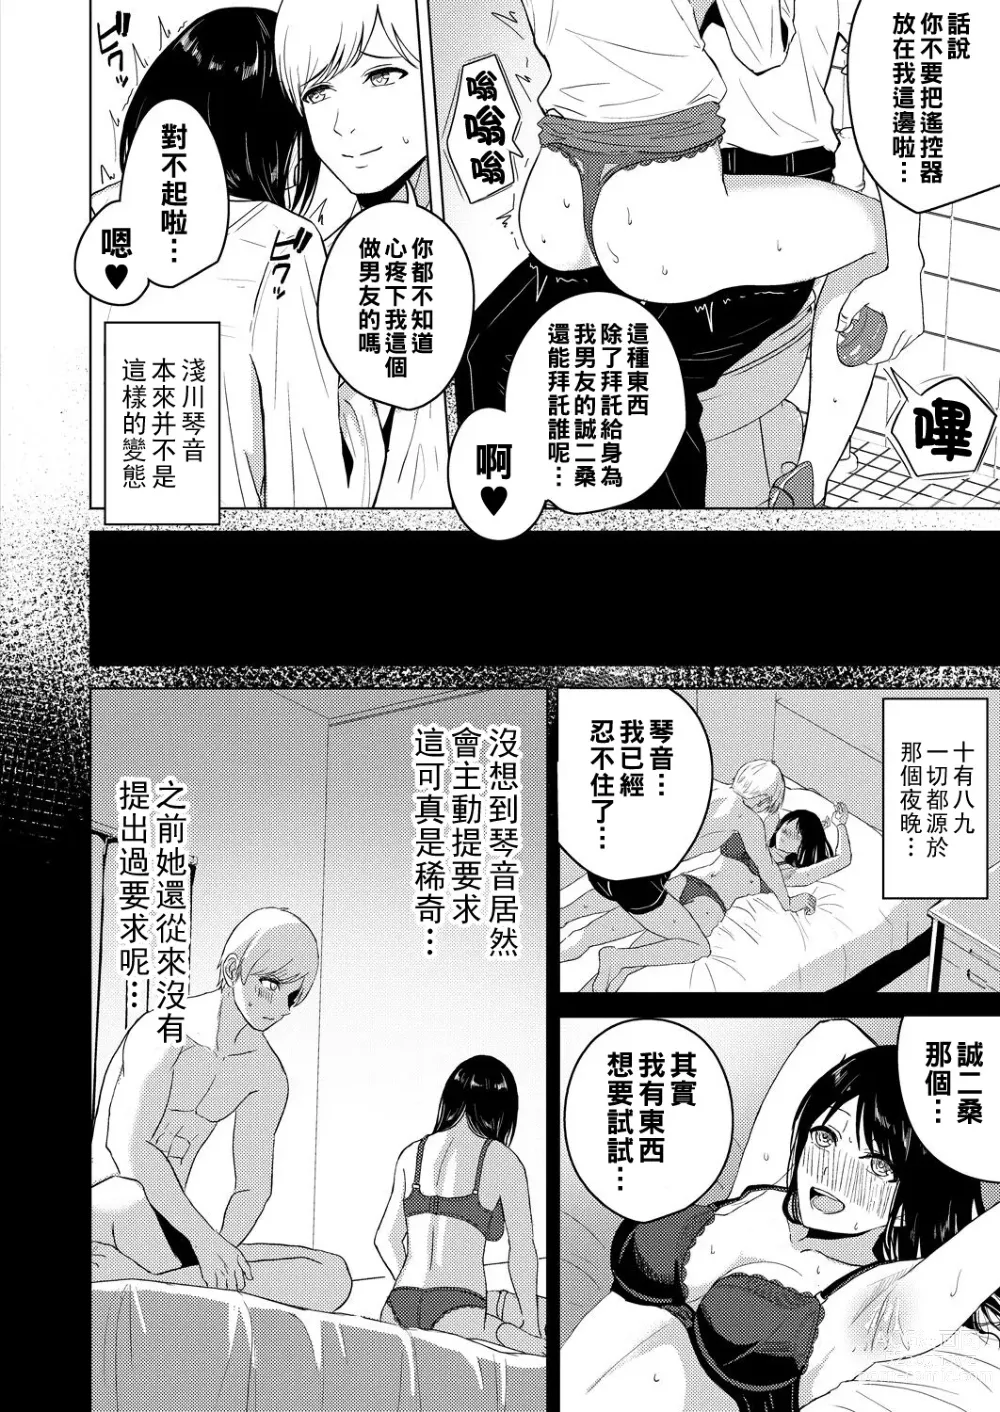 Page 4 of manga Kaikan Office